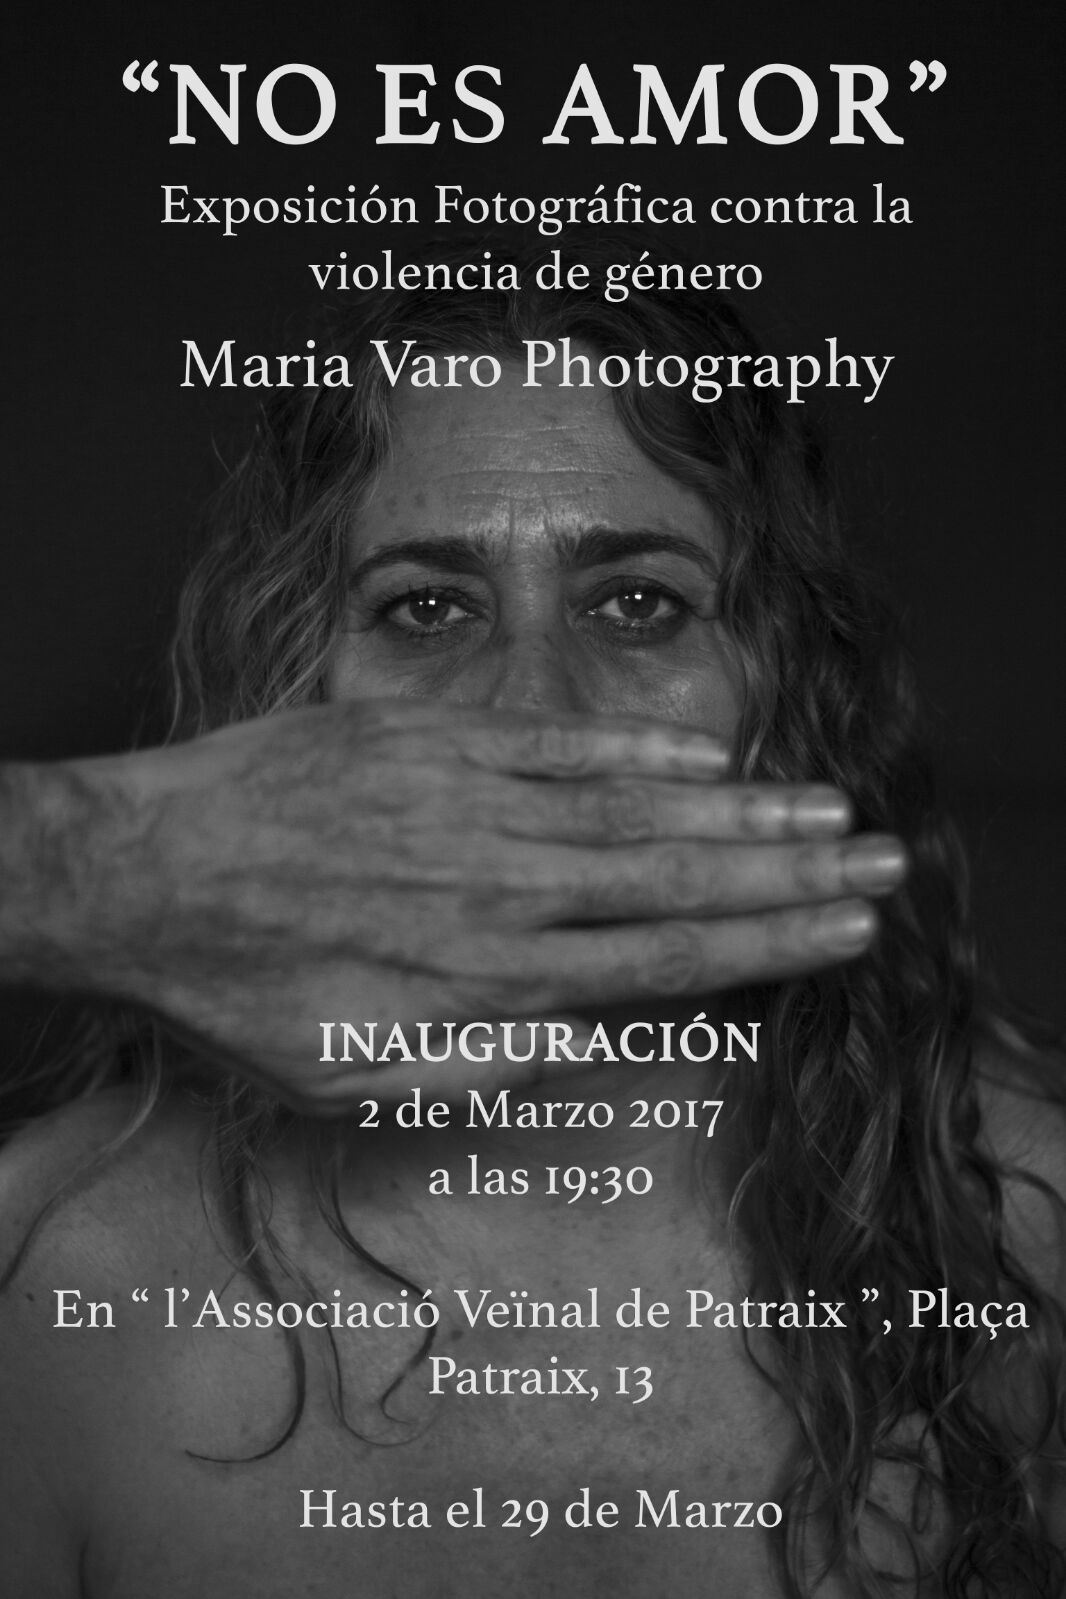 Exposición fotográfica contra la violencia de género de Maria Varo